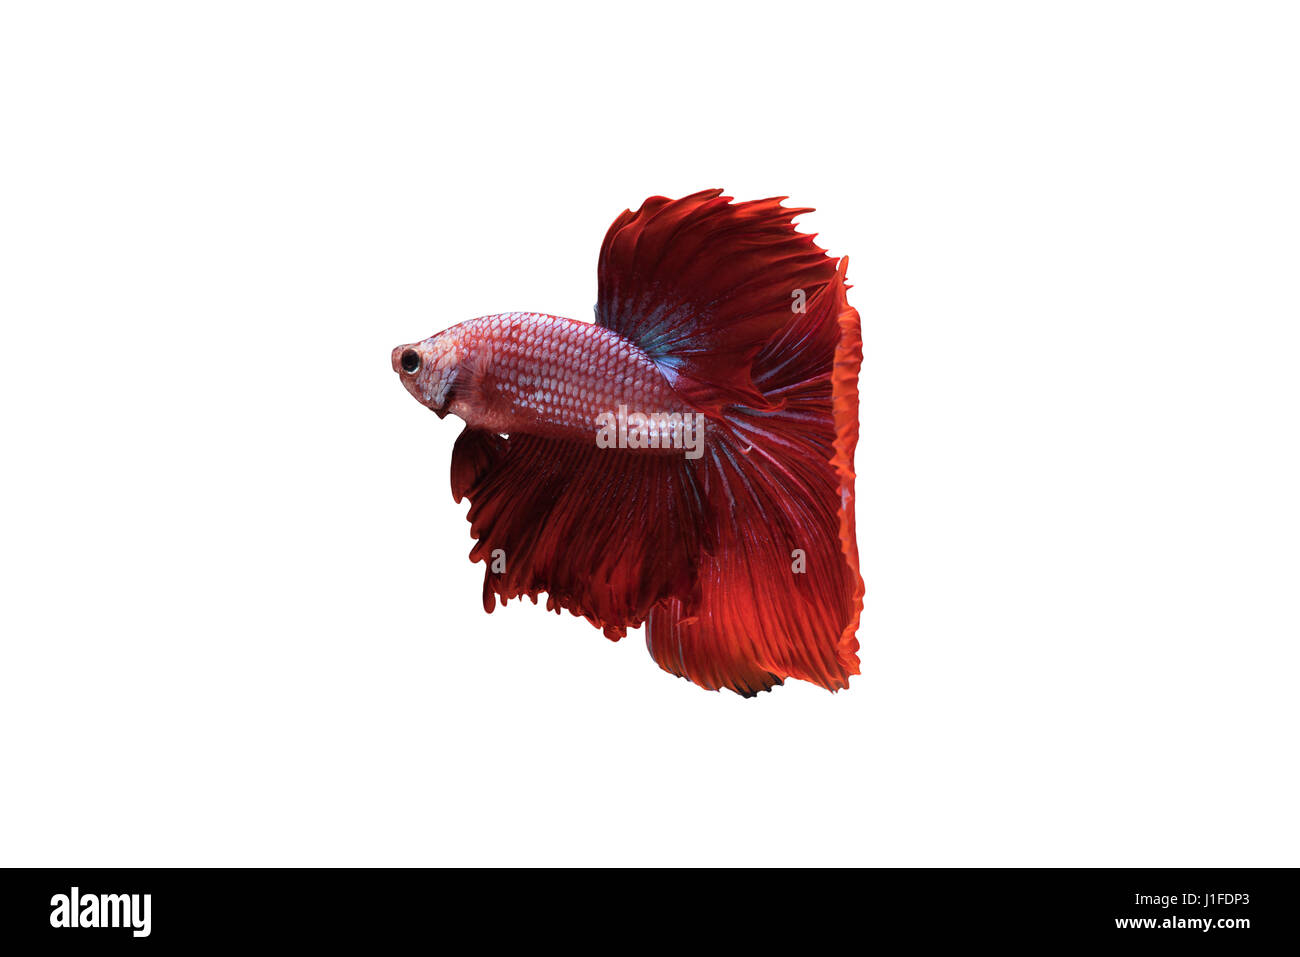 Rot Halfmoon Betta Splendens oder siamesische Kampffische isoliert auf weißem Hintergrund enthalten Schneidepfad, Plakat-Thailand Stockfoto